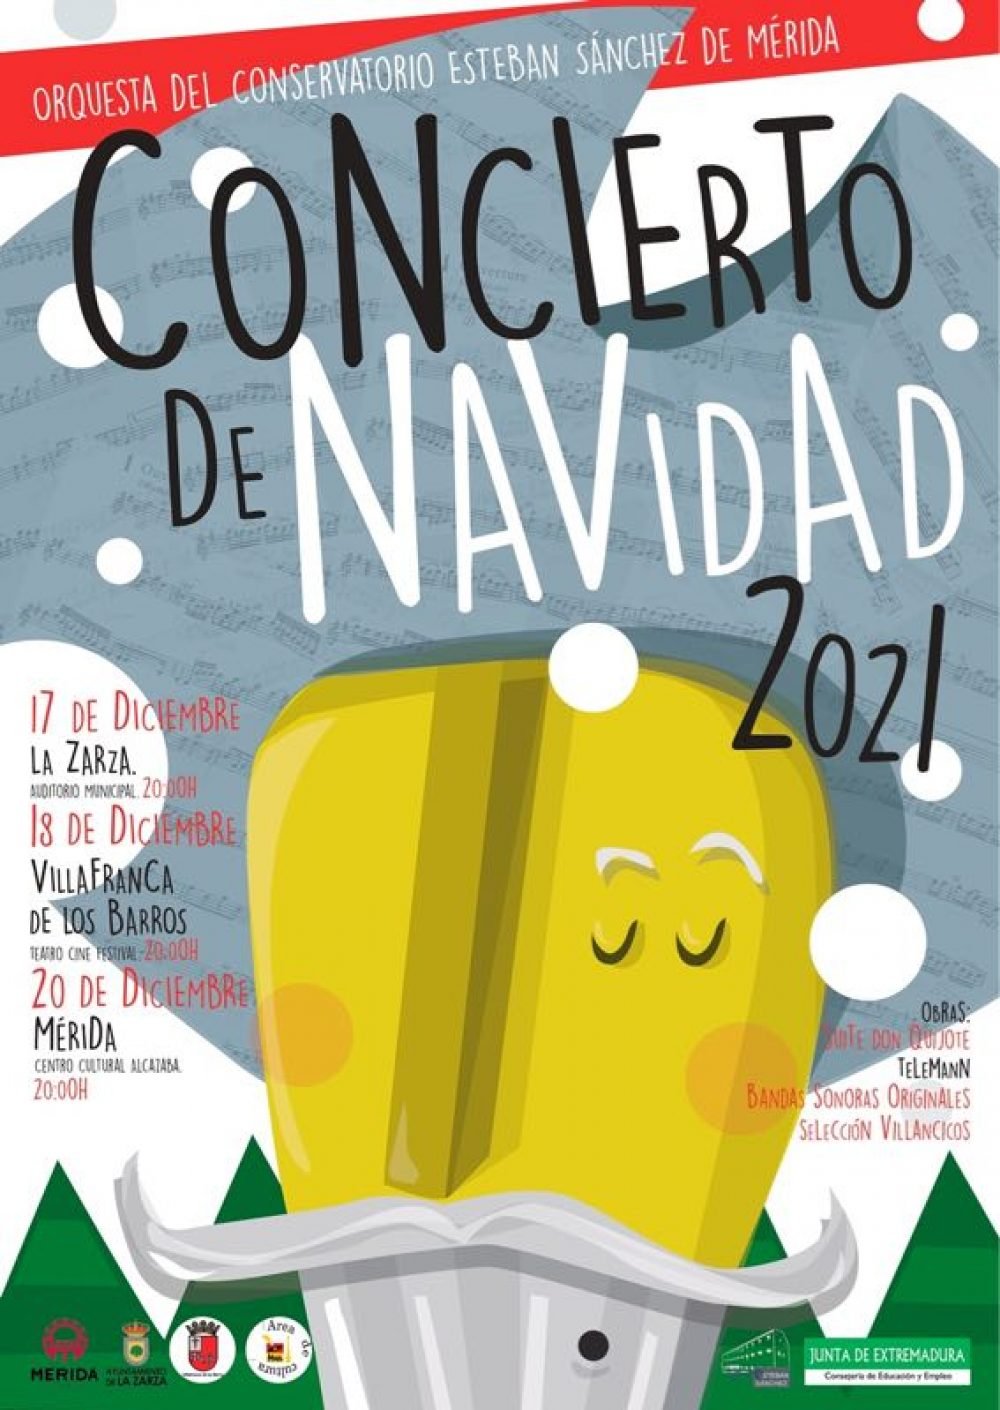 Concierto de Navidad Orquesta del Conservatorio Esteban Sánchez